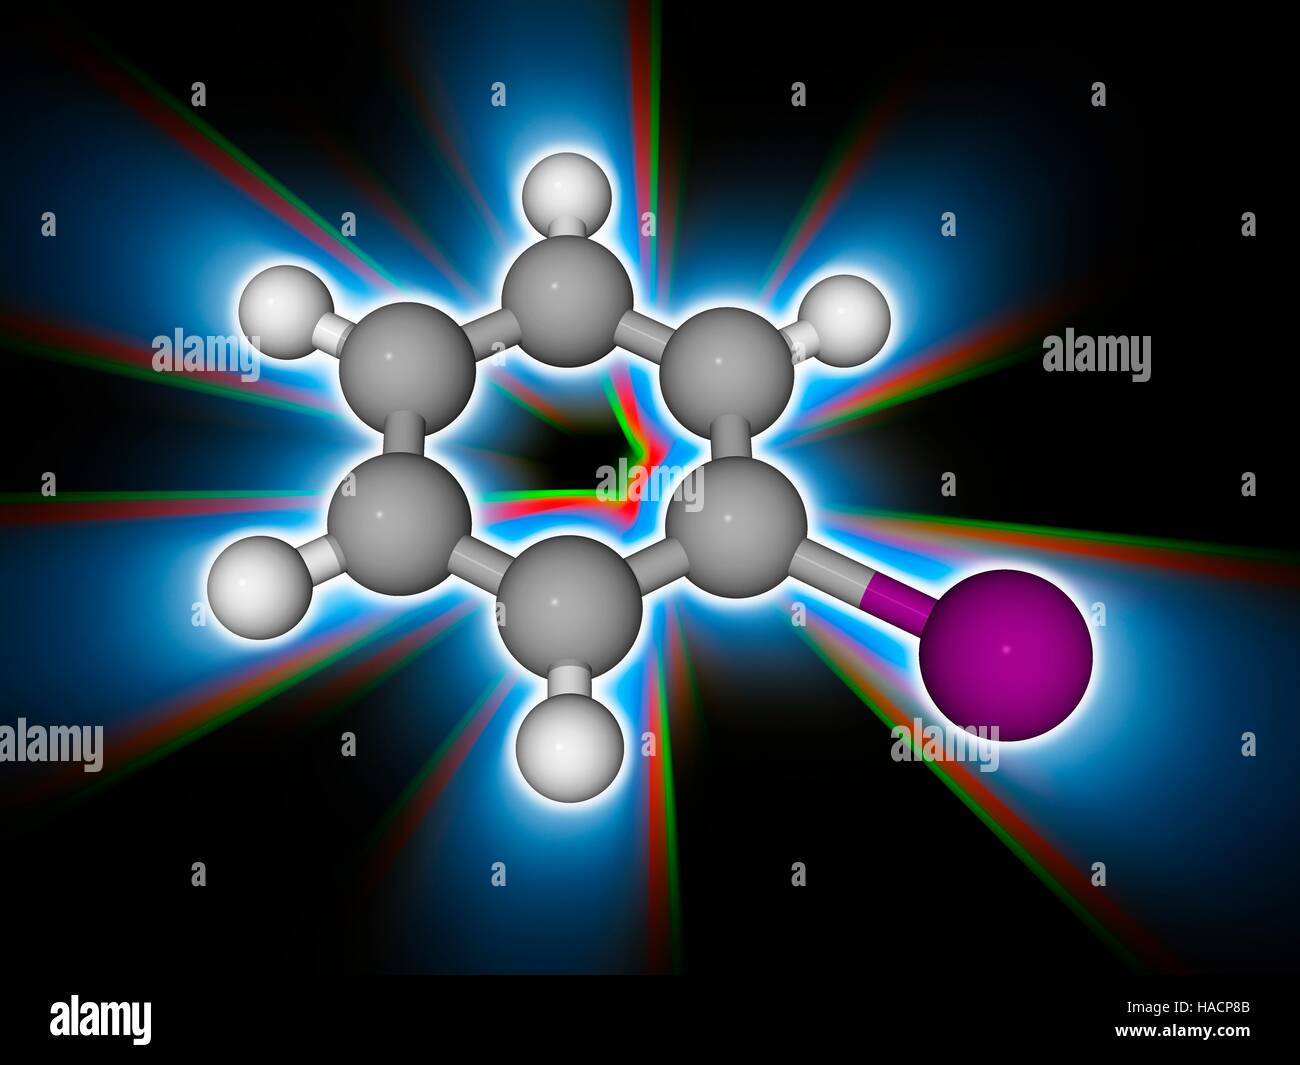 Iodobenzene. Molekulares Modell des organischen aromatischen Verbindung Iodobenzene (C6. H5. I), verwendet als ein synthetisches Zwischenprodukt in der organischen Chemie. Atome als Kugeln dargestellt werden und sind farblich gekennzeichnet: Kohlenstoff (grau), Wasserstoff (weiß) und Jod (violett). Abbildung. Stockfoto